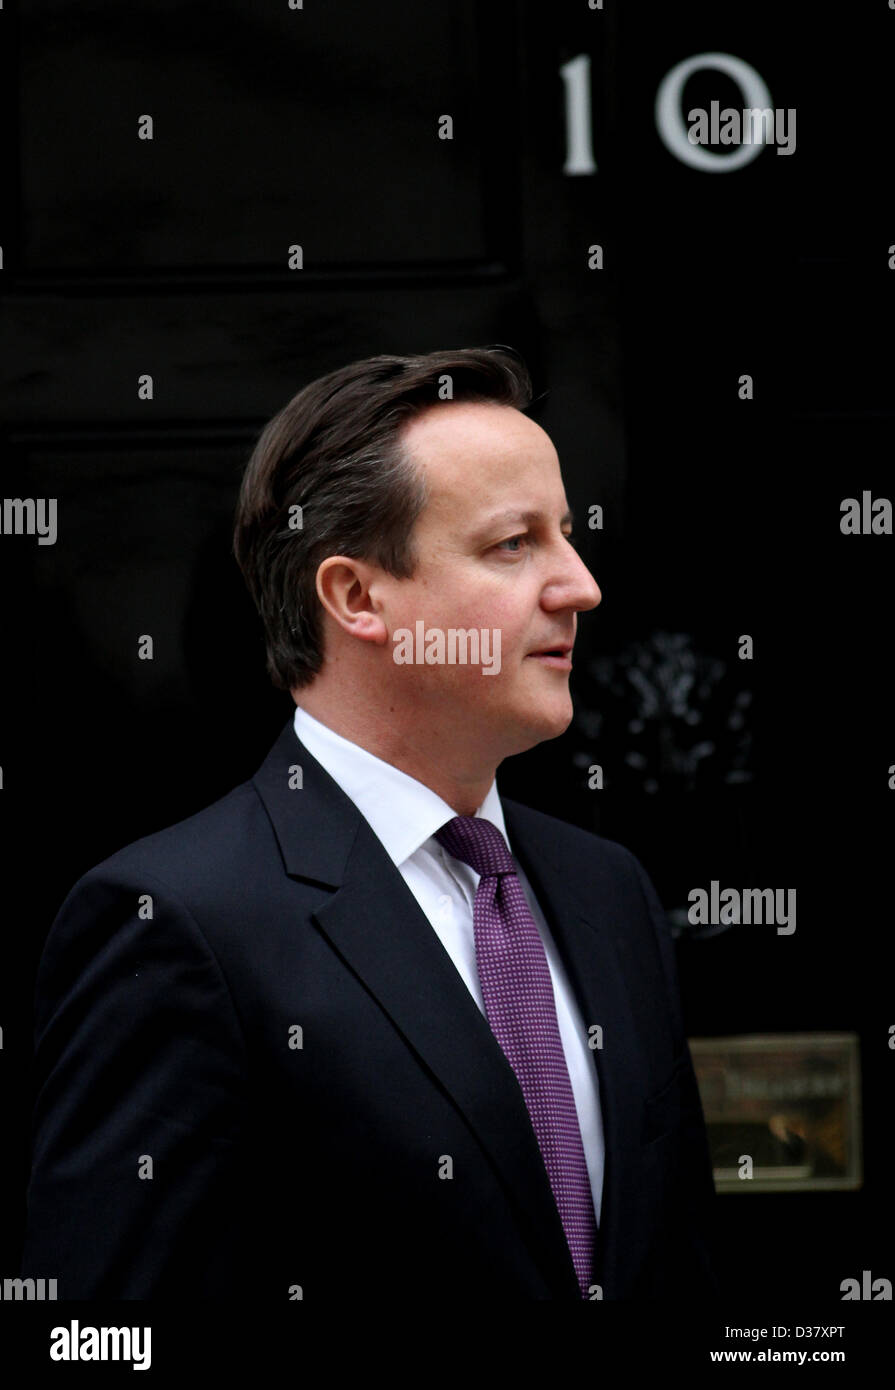 Le premier ministre britannique David Cameron 12 février 2013 Downing Street LONDON ENGLAND UK Banque D'Images